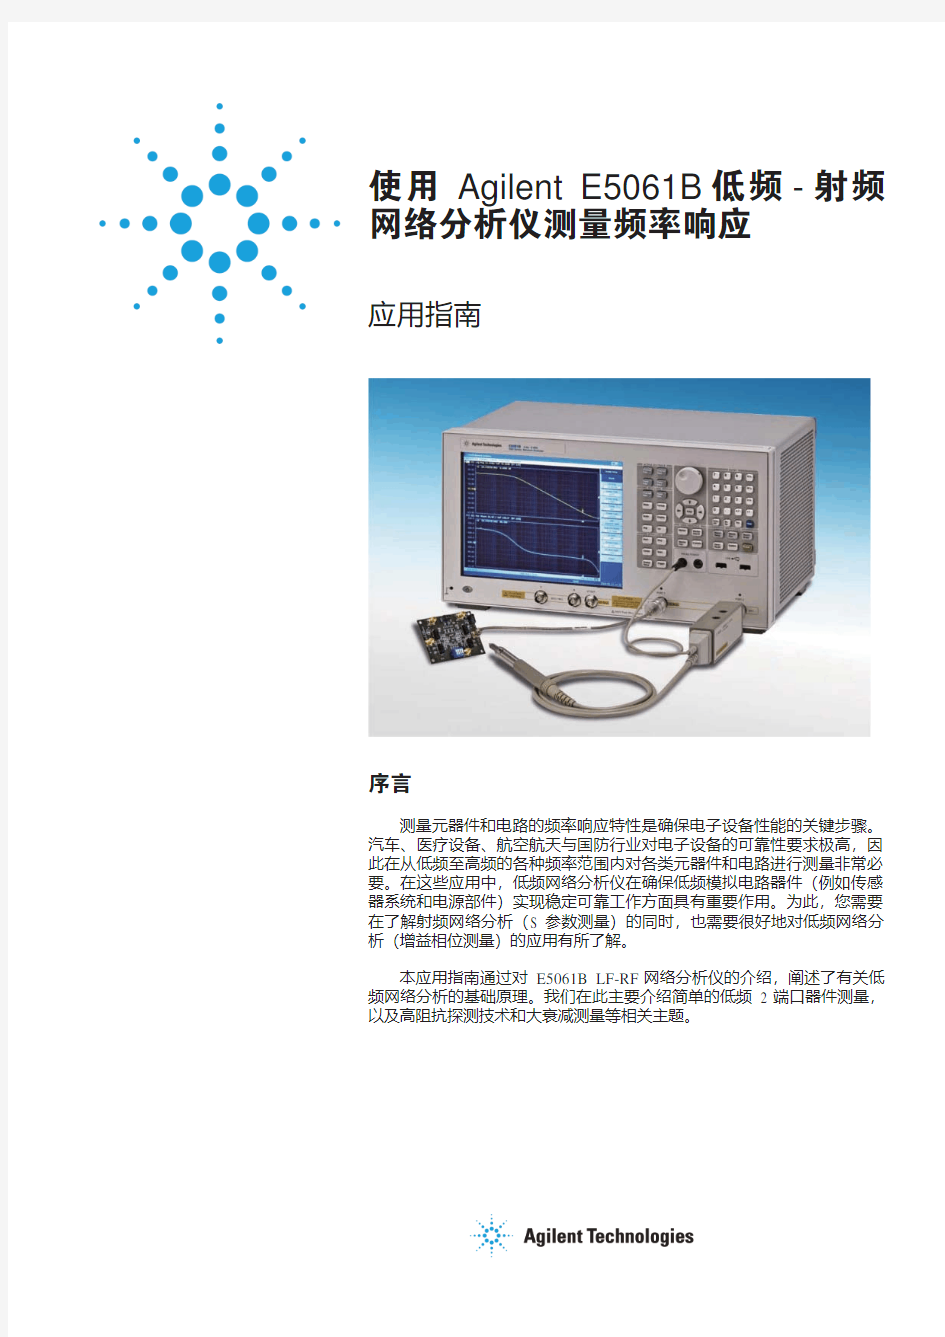 使用 Agilent E5061B 低频-射频网络分析仪测量频率响应